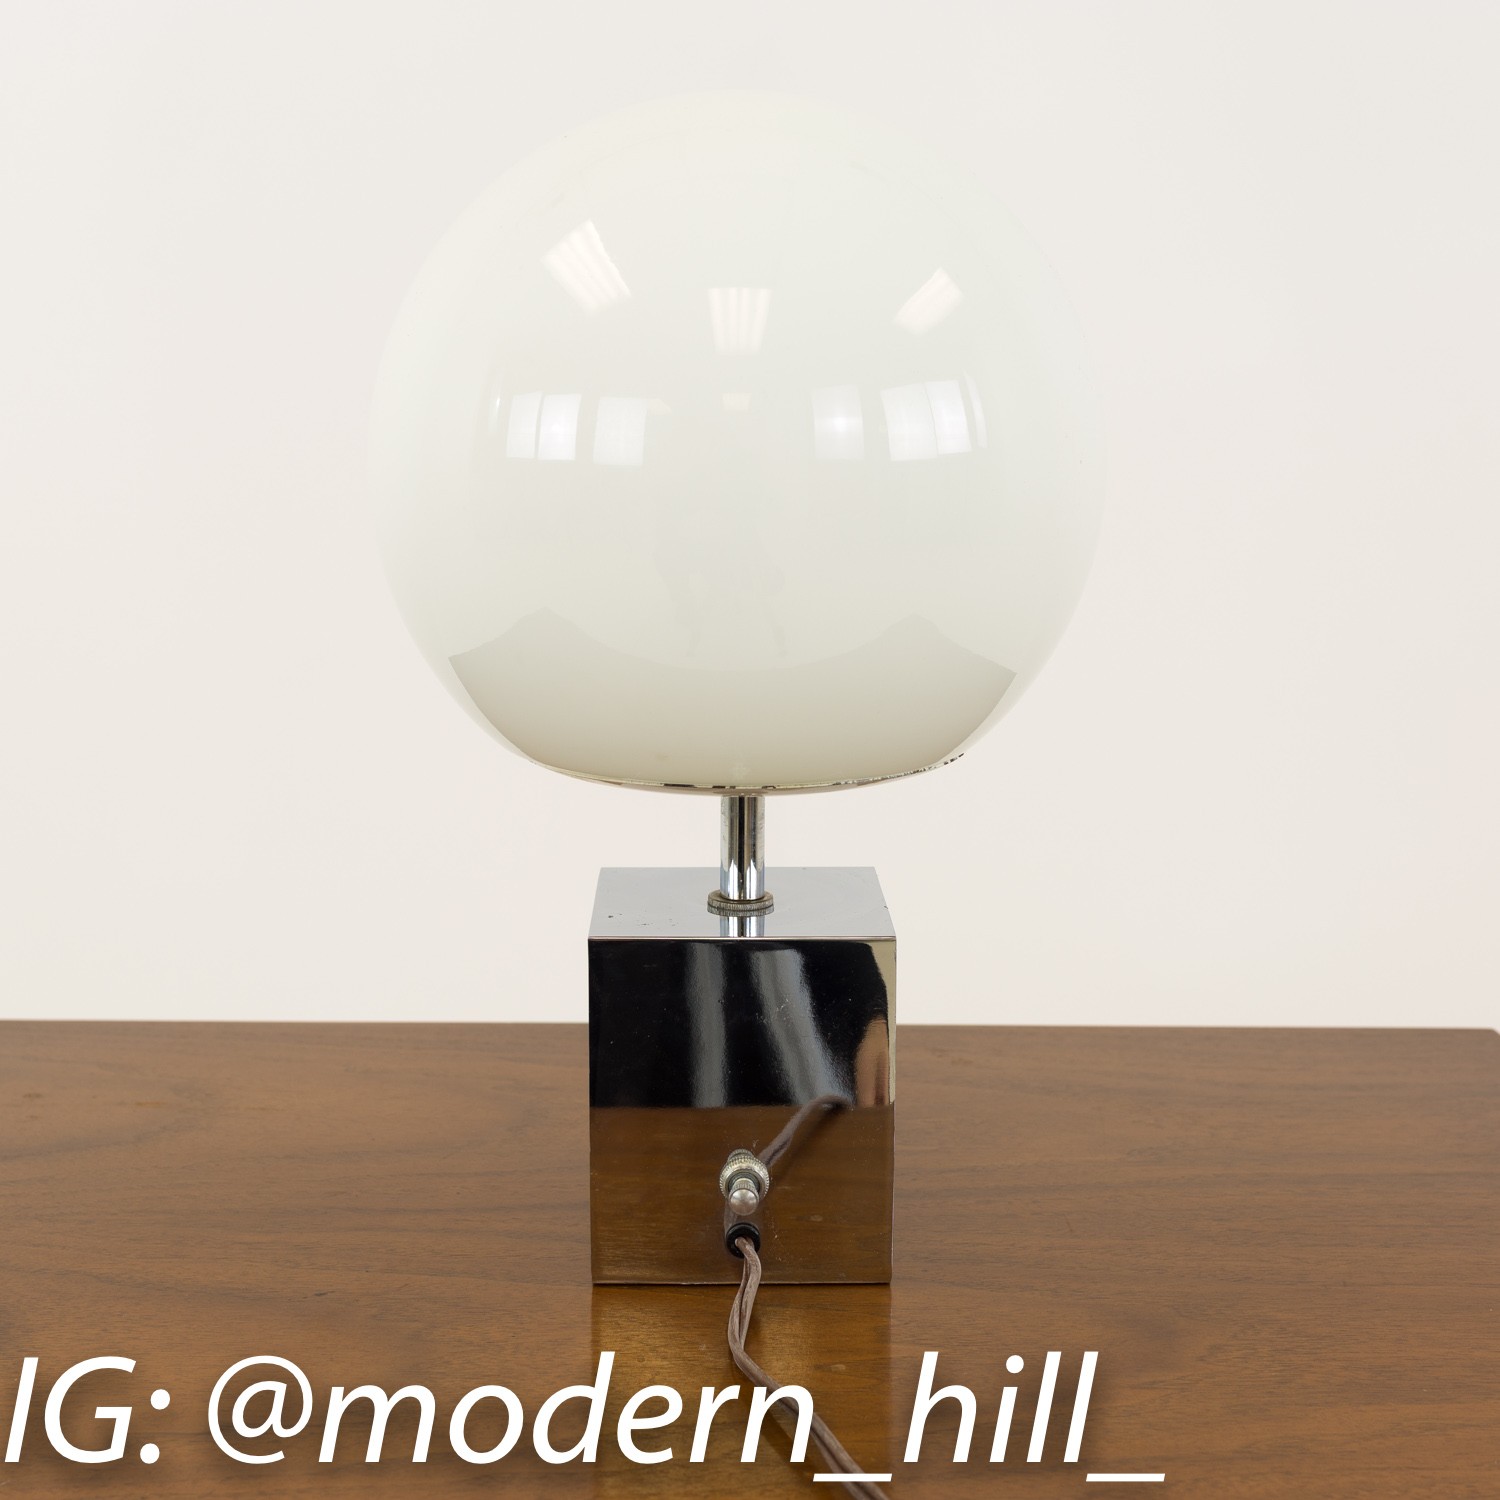 Robert Sonneman Mid Century Cubed Chrome Base Globe Table Desk Lamp